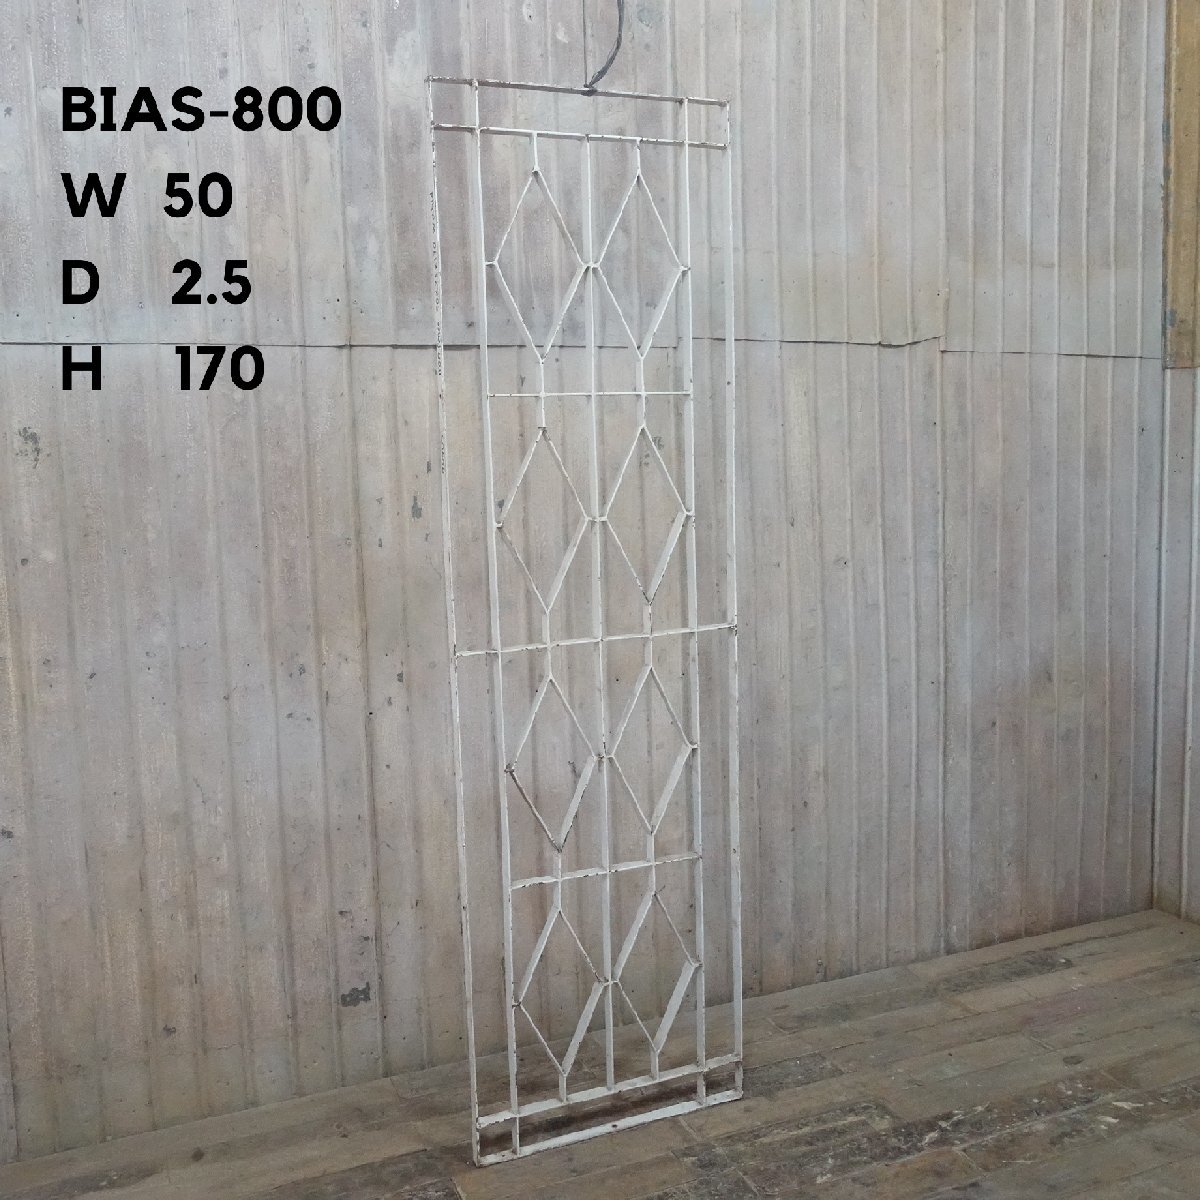 B-800◆W50×H170 大型アンティークアイアンフェンス ガーデニング 鉄格子 パーティション ラティス ビンテージ 鉄柵 stk